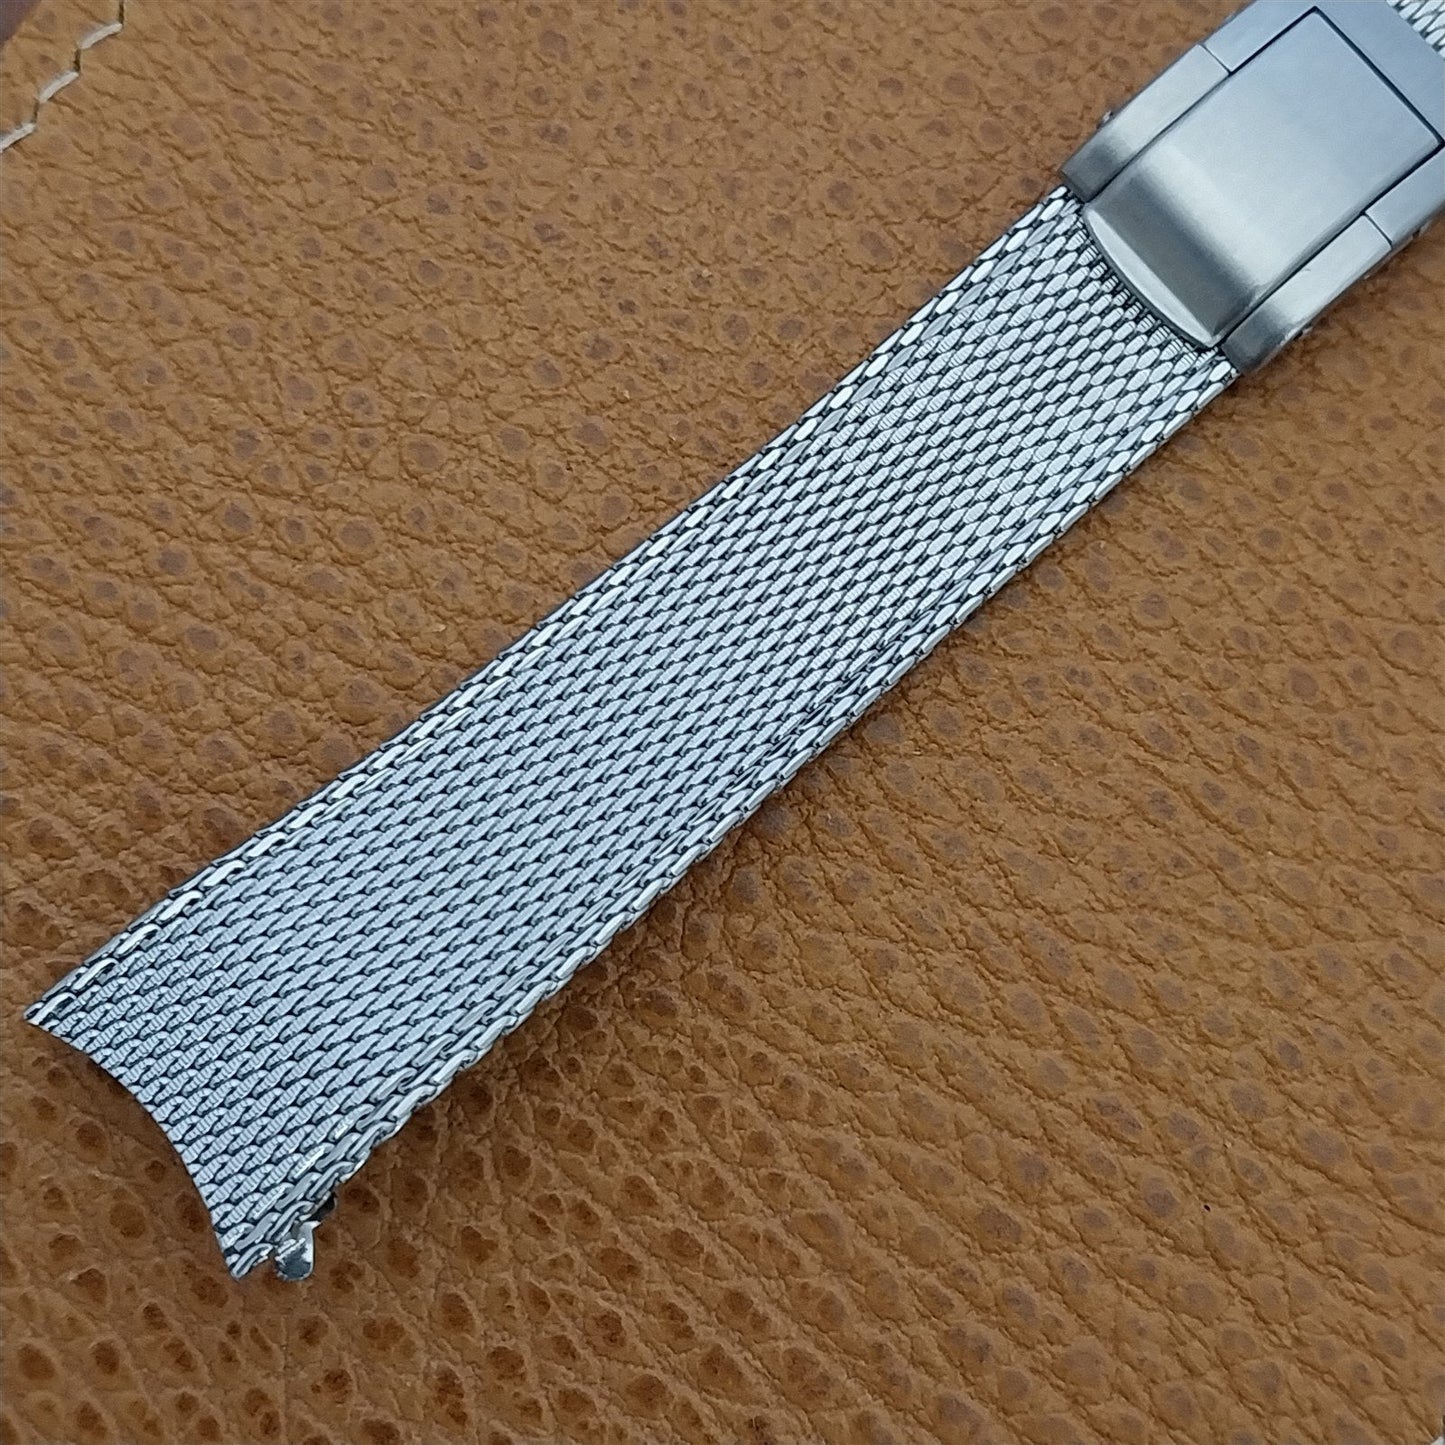 19mm Stainless Steel Mesh Kreisler Stelux 1960s Unused Vintage Watch Band